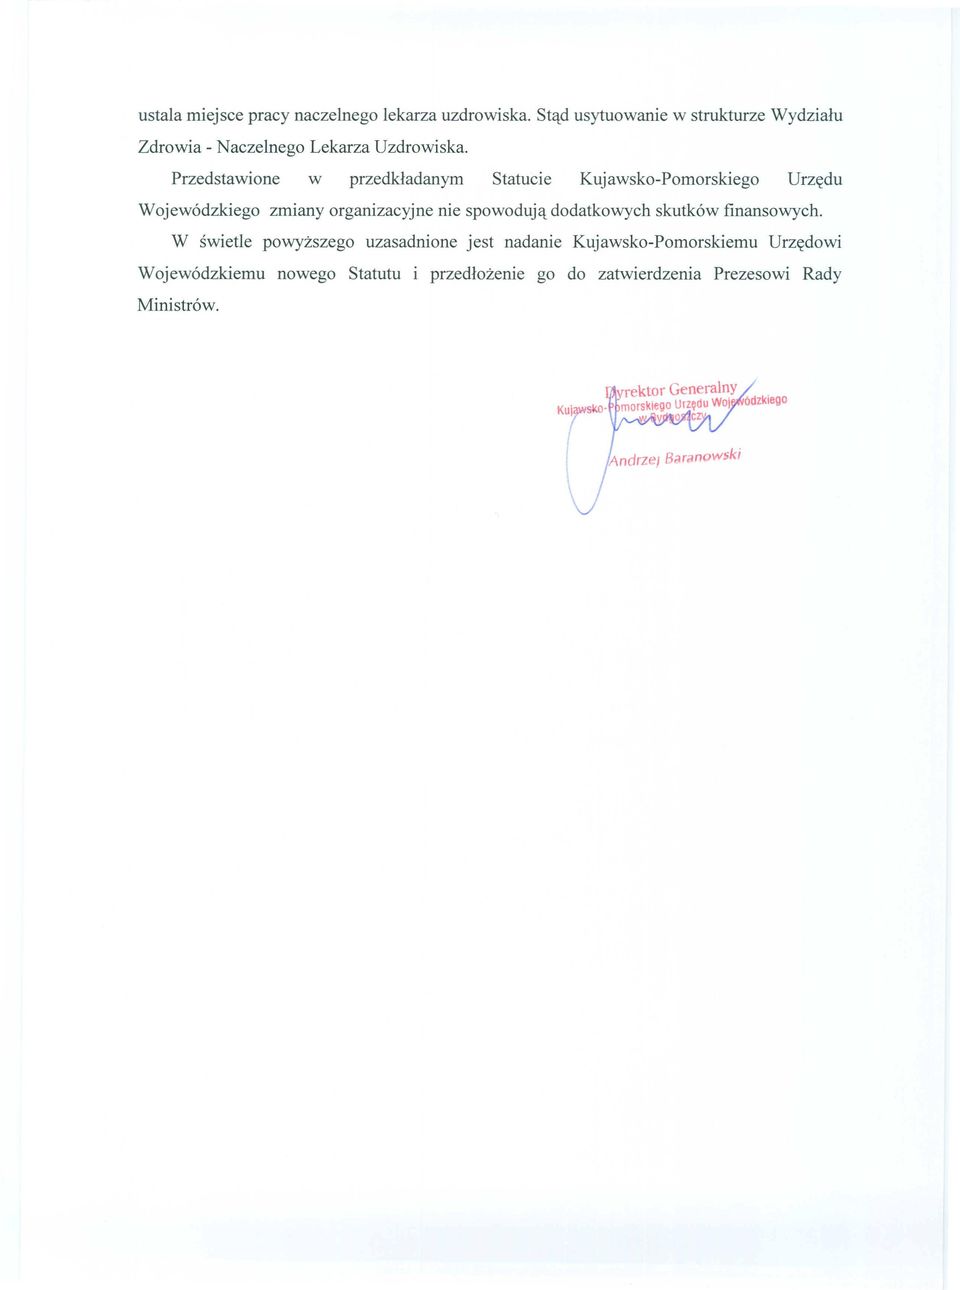 Przedstawione w przedkładanym Statucie Kujawsko-Pomorskiego Urzędu Wojewódzkiego zmiany organizacyjne nie